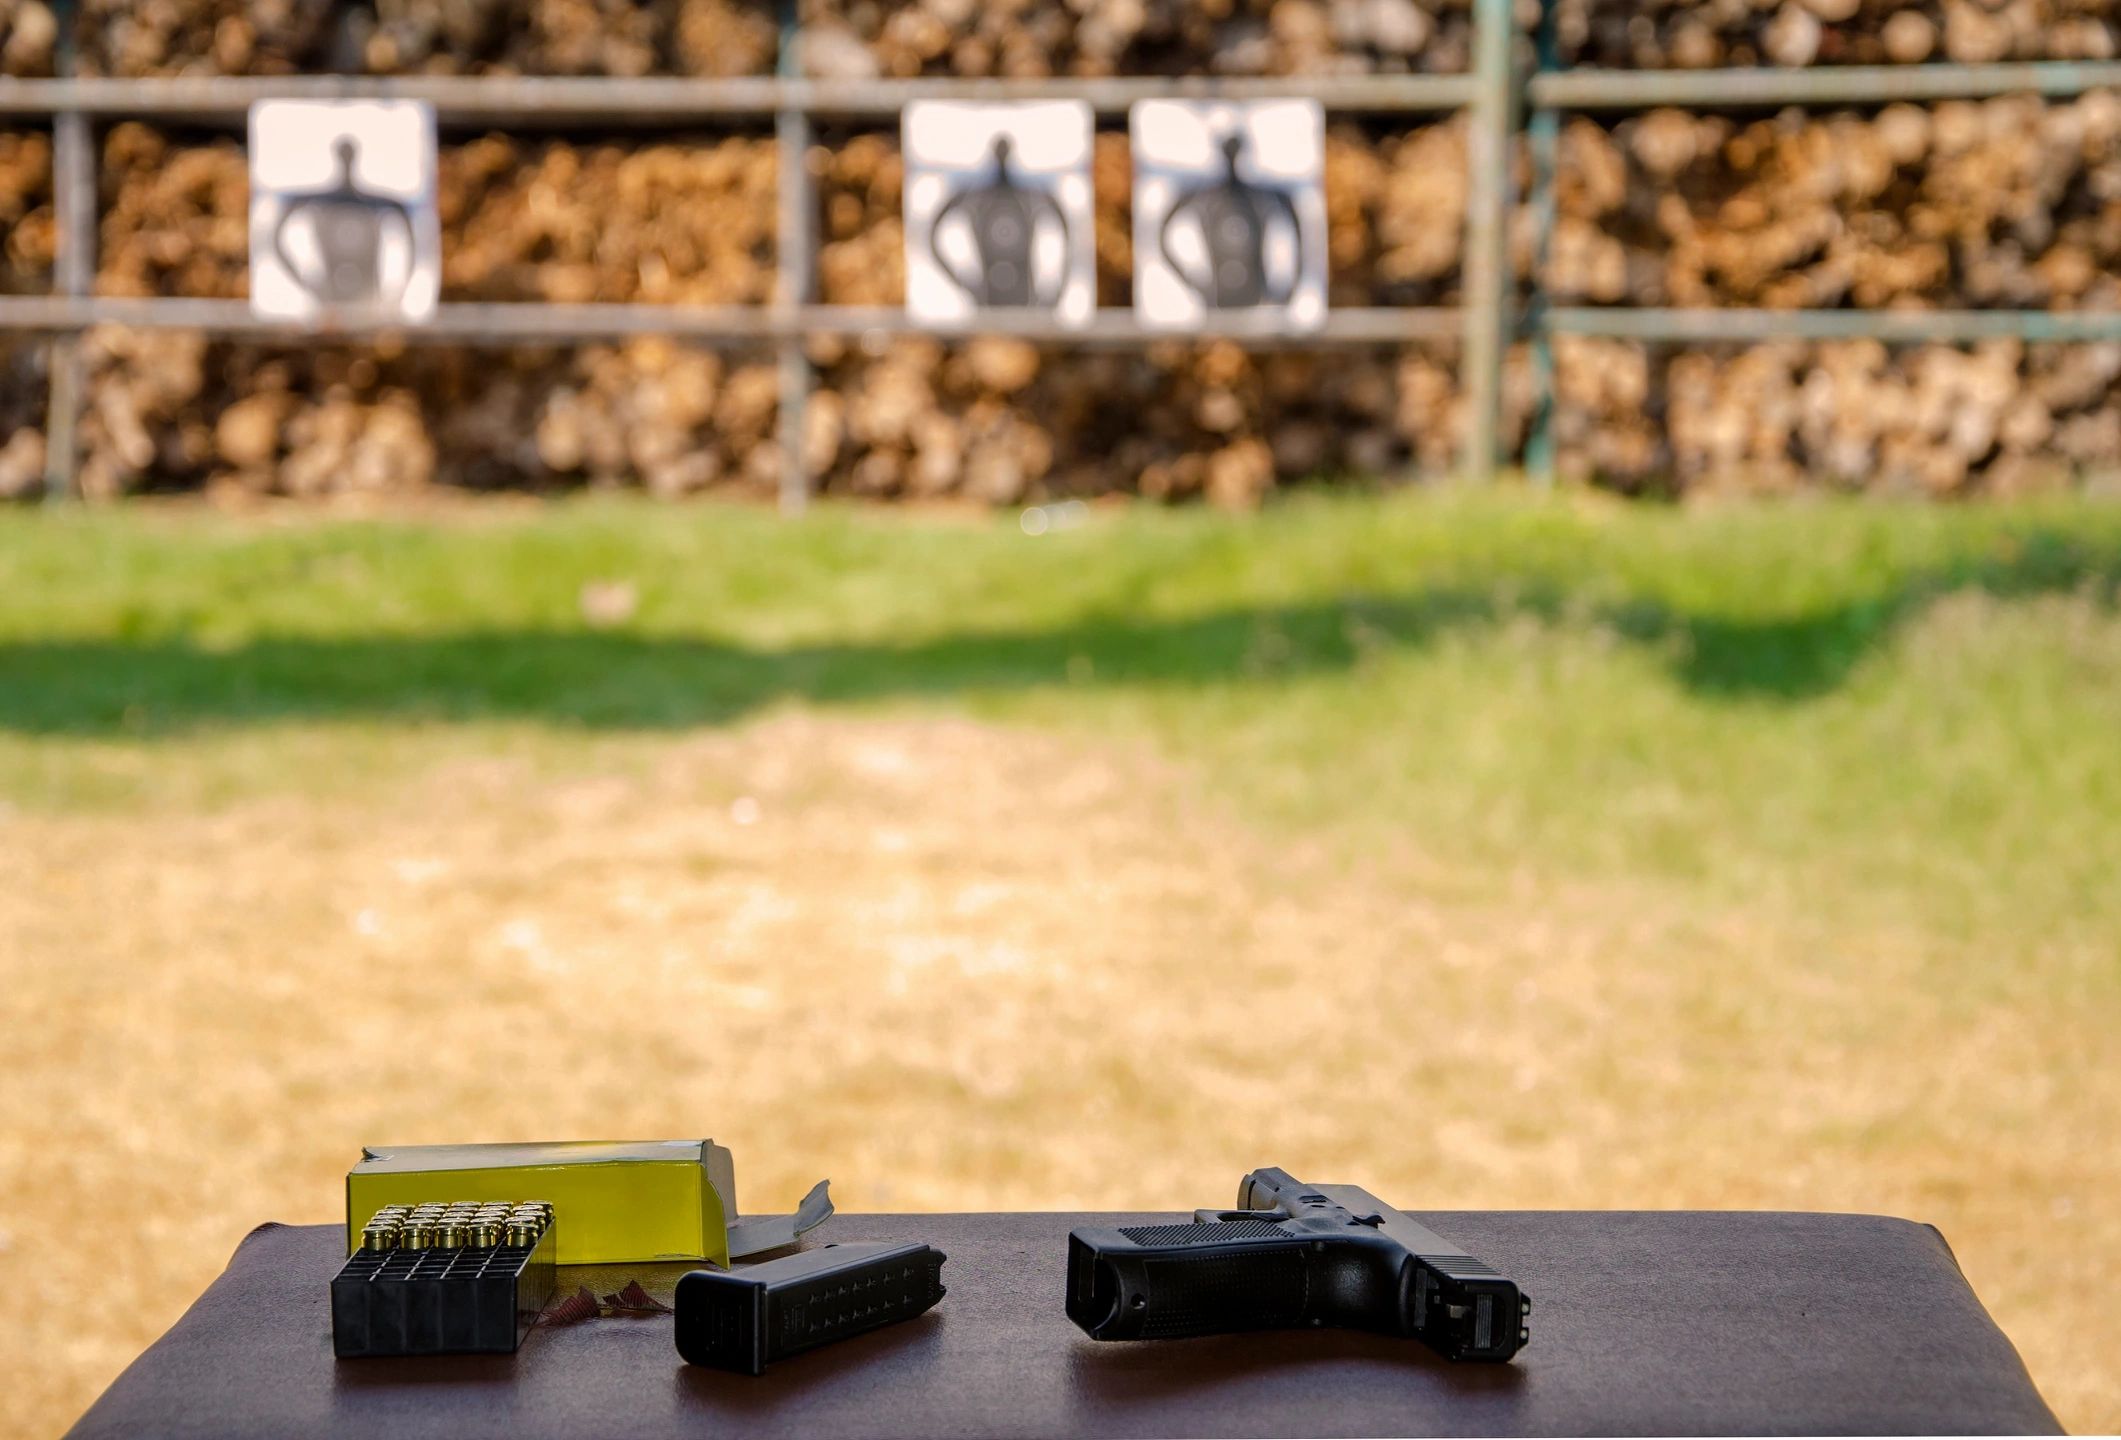 Training at Shooting Range